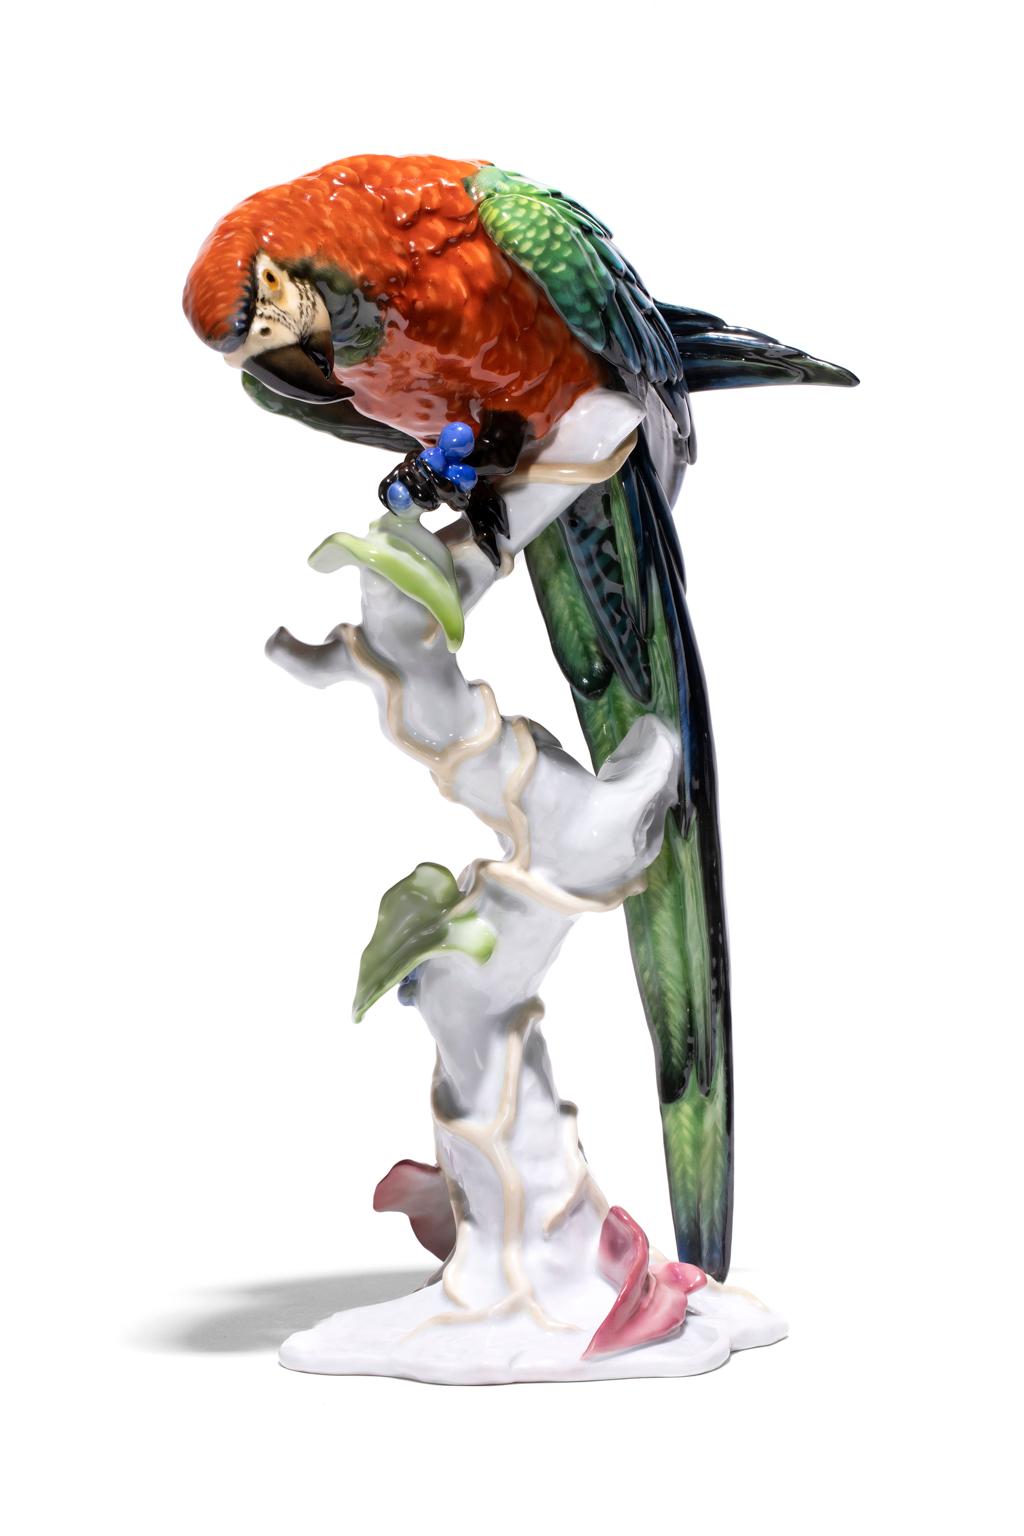 Der außergewöhnliche Papagei kann als Mealy-Papagei identifiziert werden, der größte der Amazonas-Arten, die auf der Halbinsel Osa in Costa Rica vorkommen. Sie unterscheiden sich von den Rotzügelpapageien durch das Fehlen der roten Zeichnung auf der